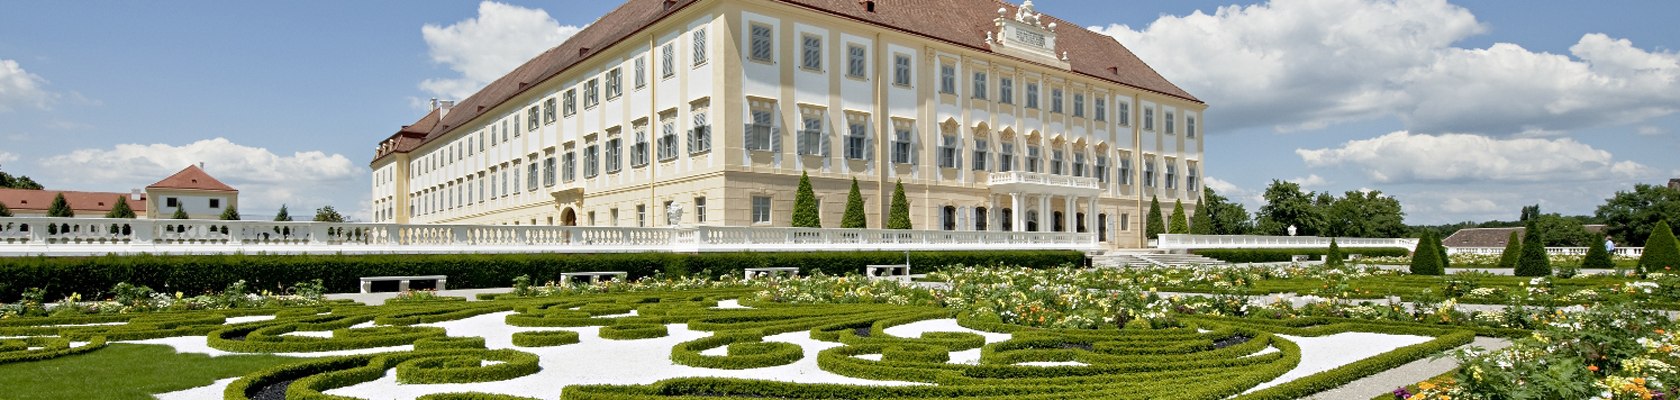 Schloss Hof, © Schloss Hof